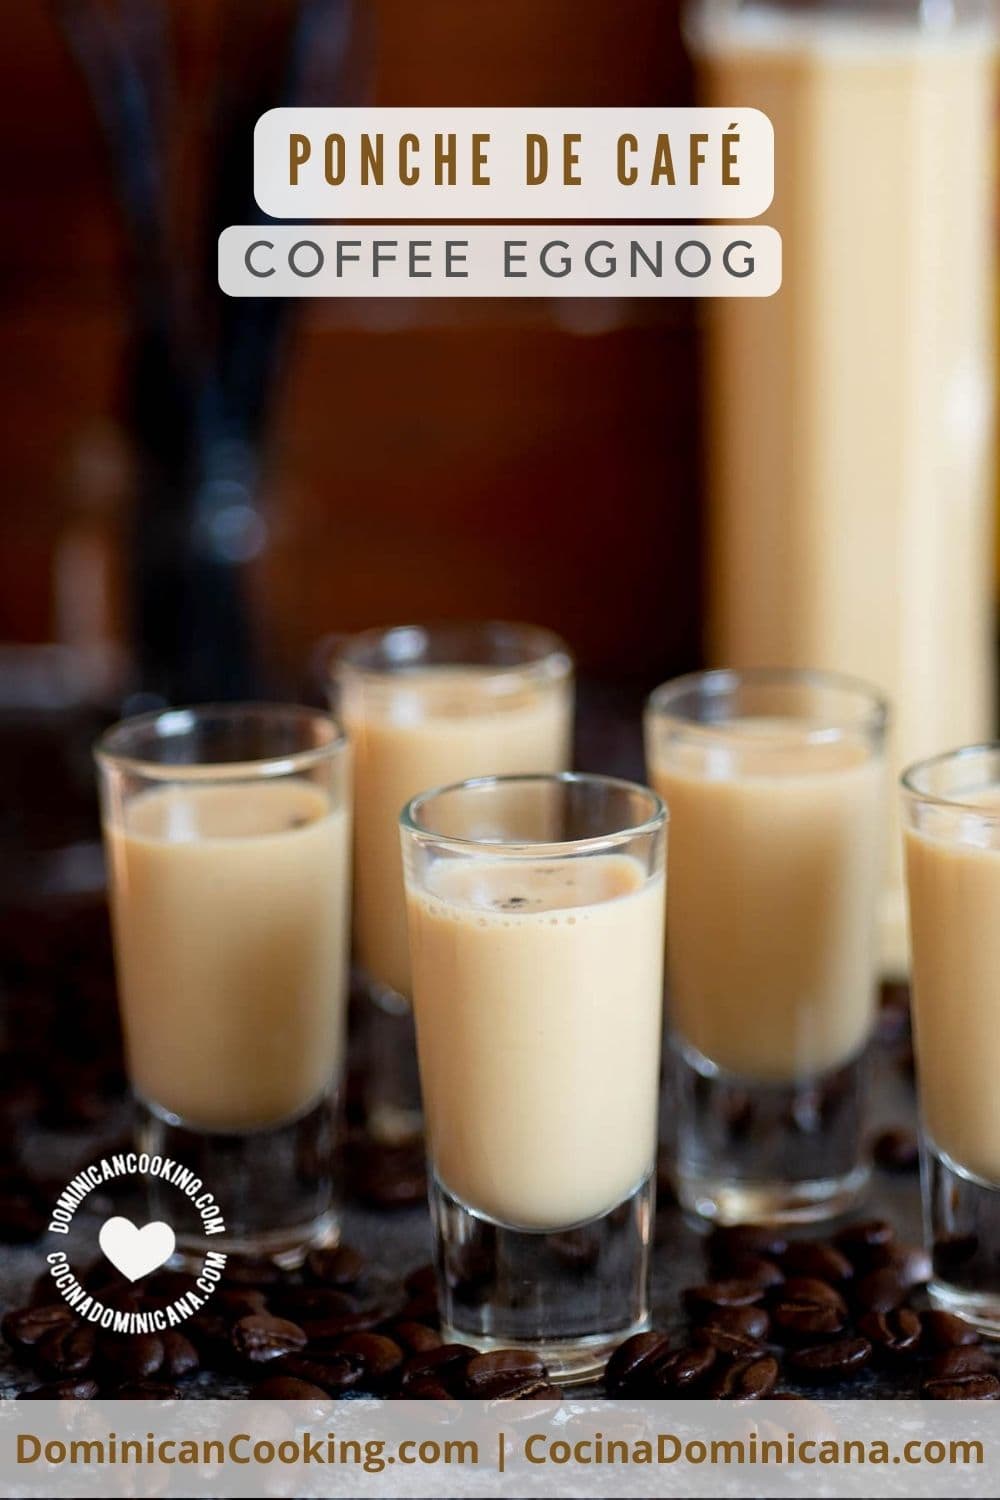 Ponche de cafe (coffee eggnog) recipe.